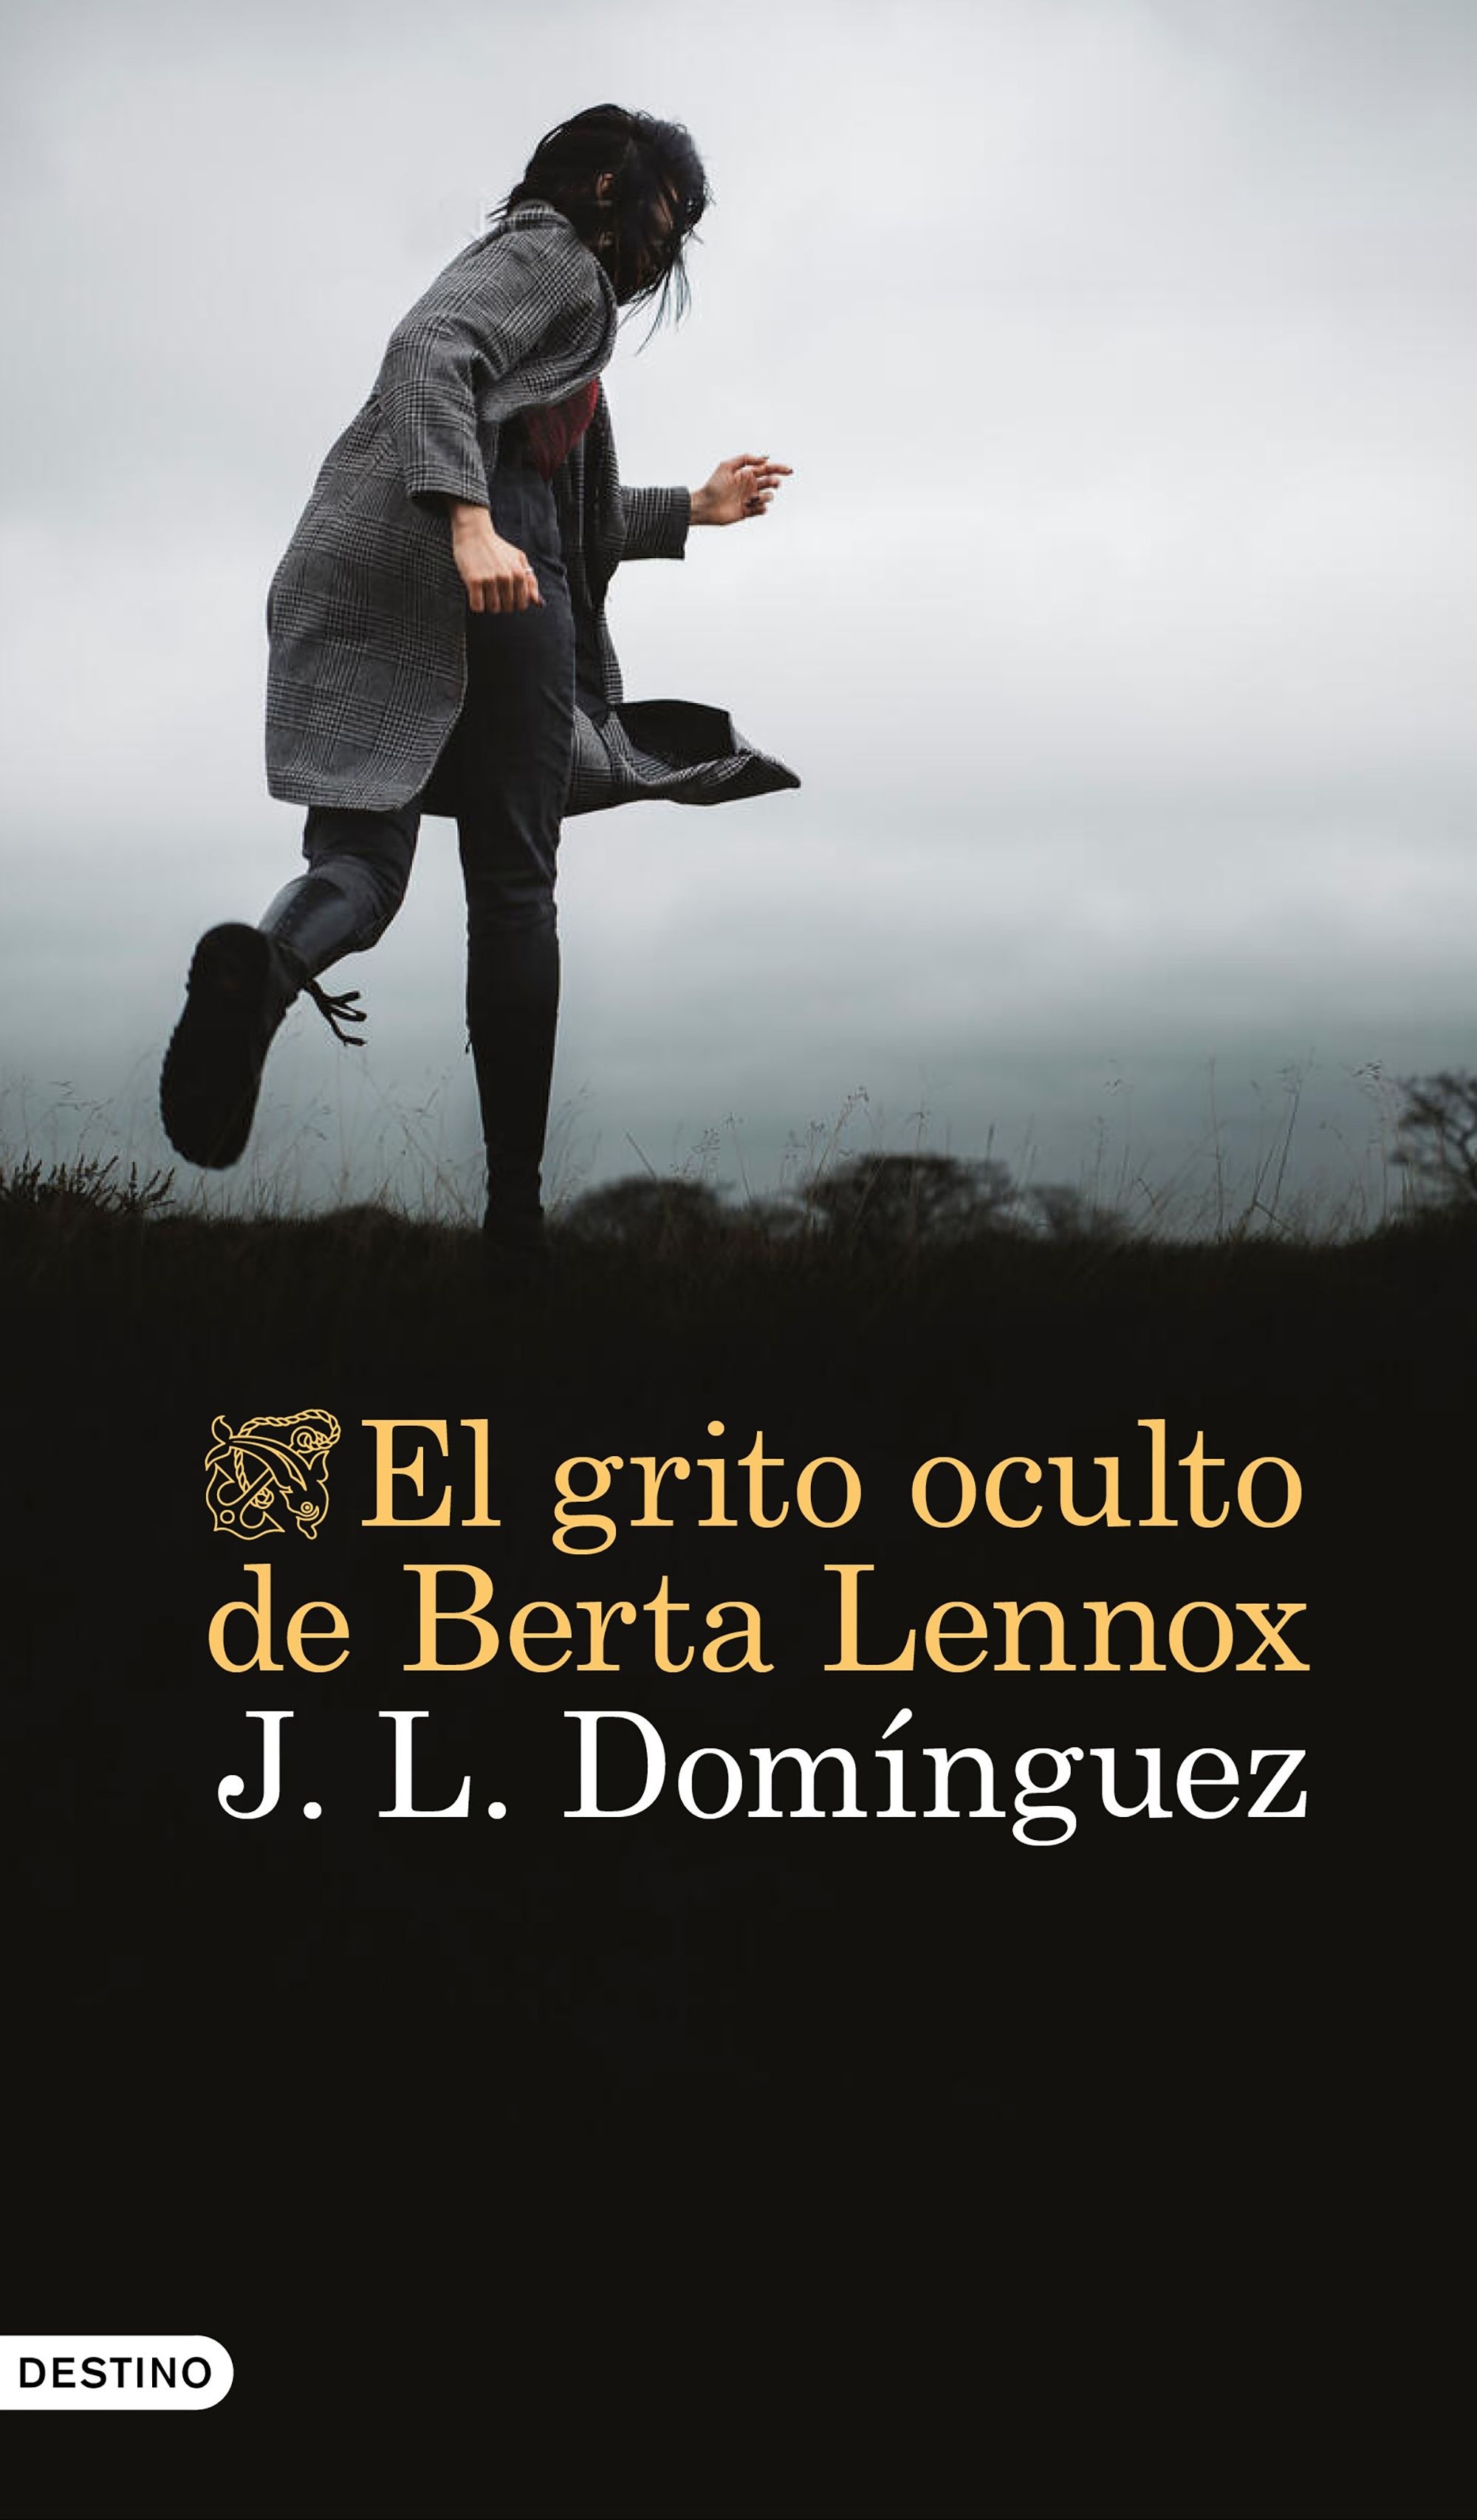 Grito oculto de Berta Lennox, El. 